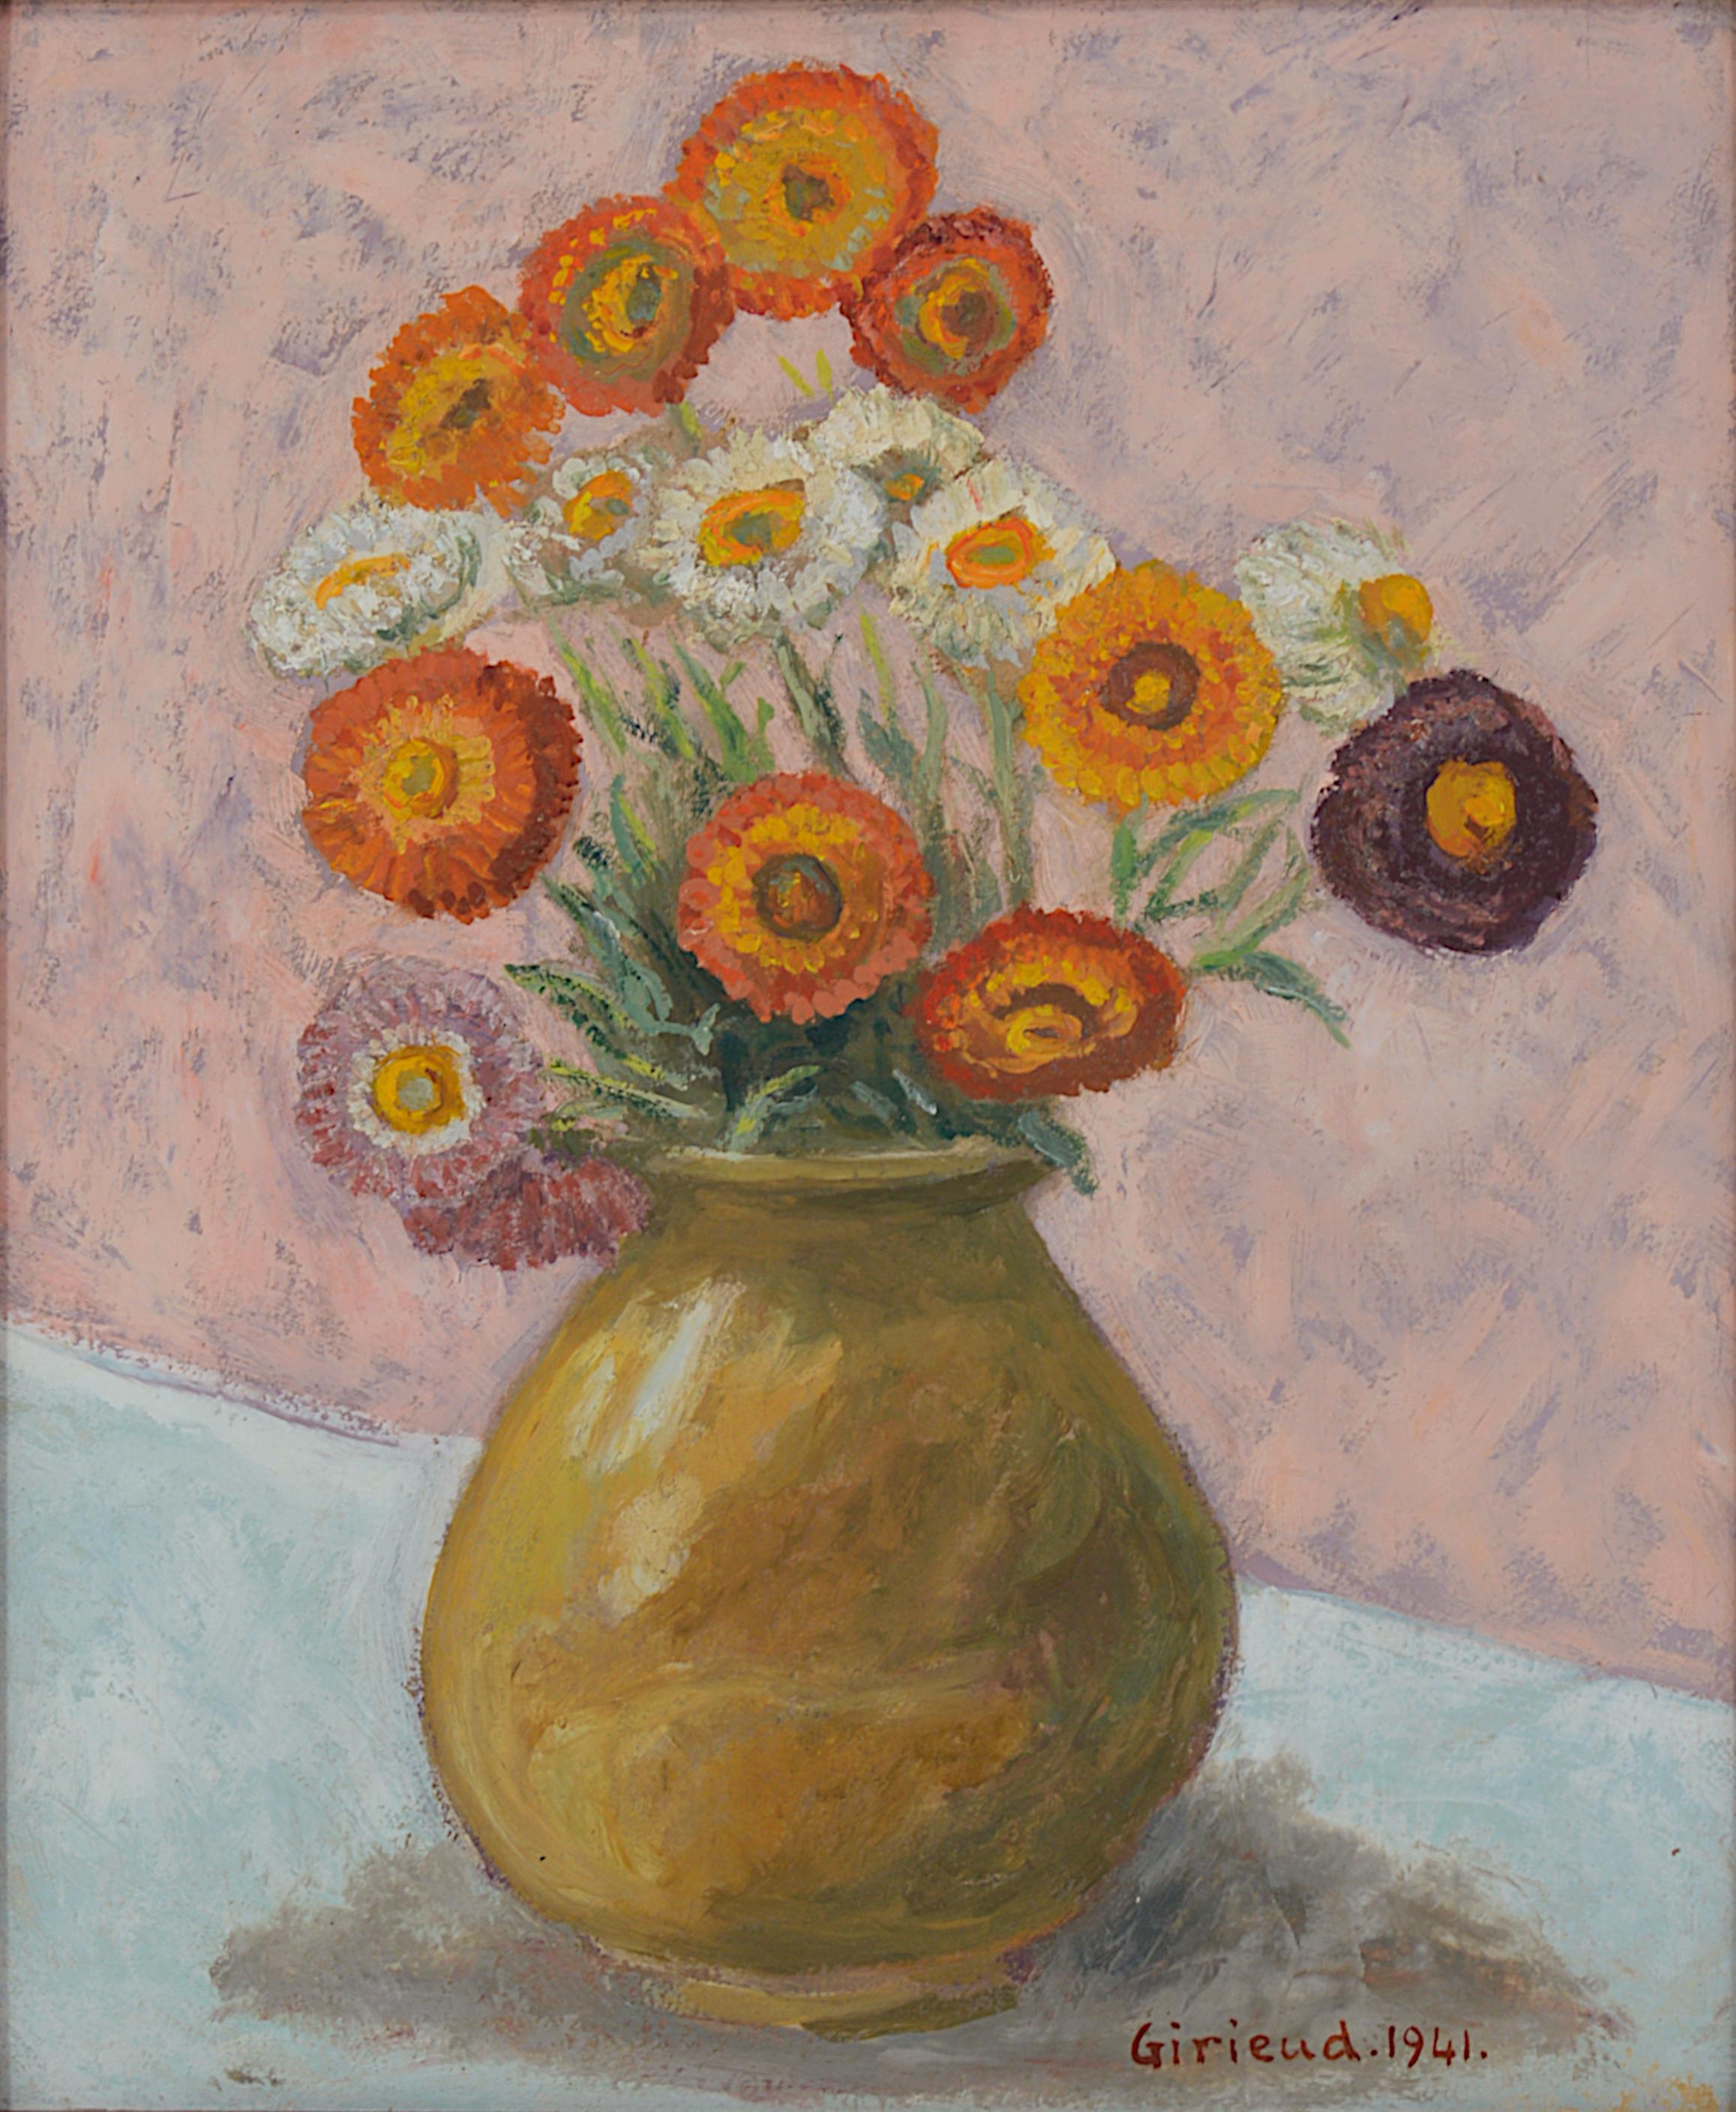 Pierre GIRIEUD, Vase of Flowers, Marigolds, Oil on Cardboard, 1941 - Painting by Pierre Girieud